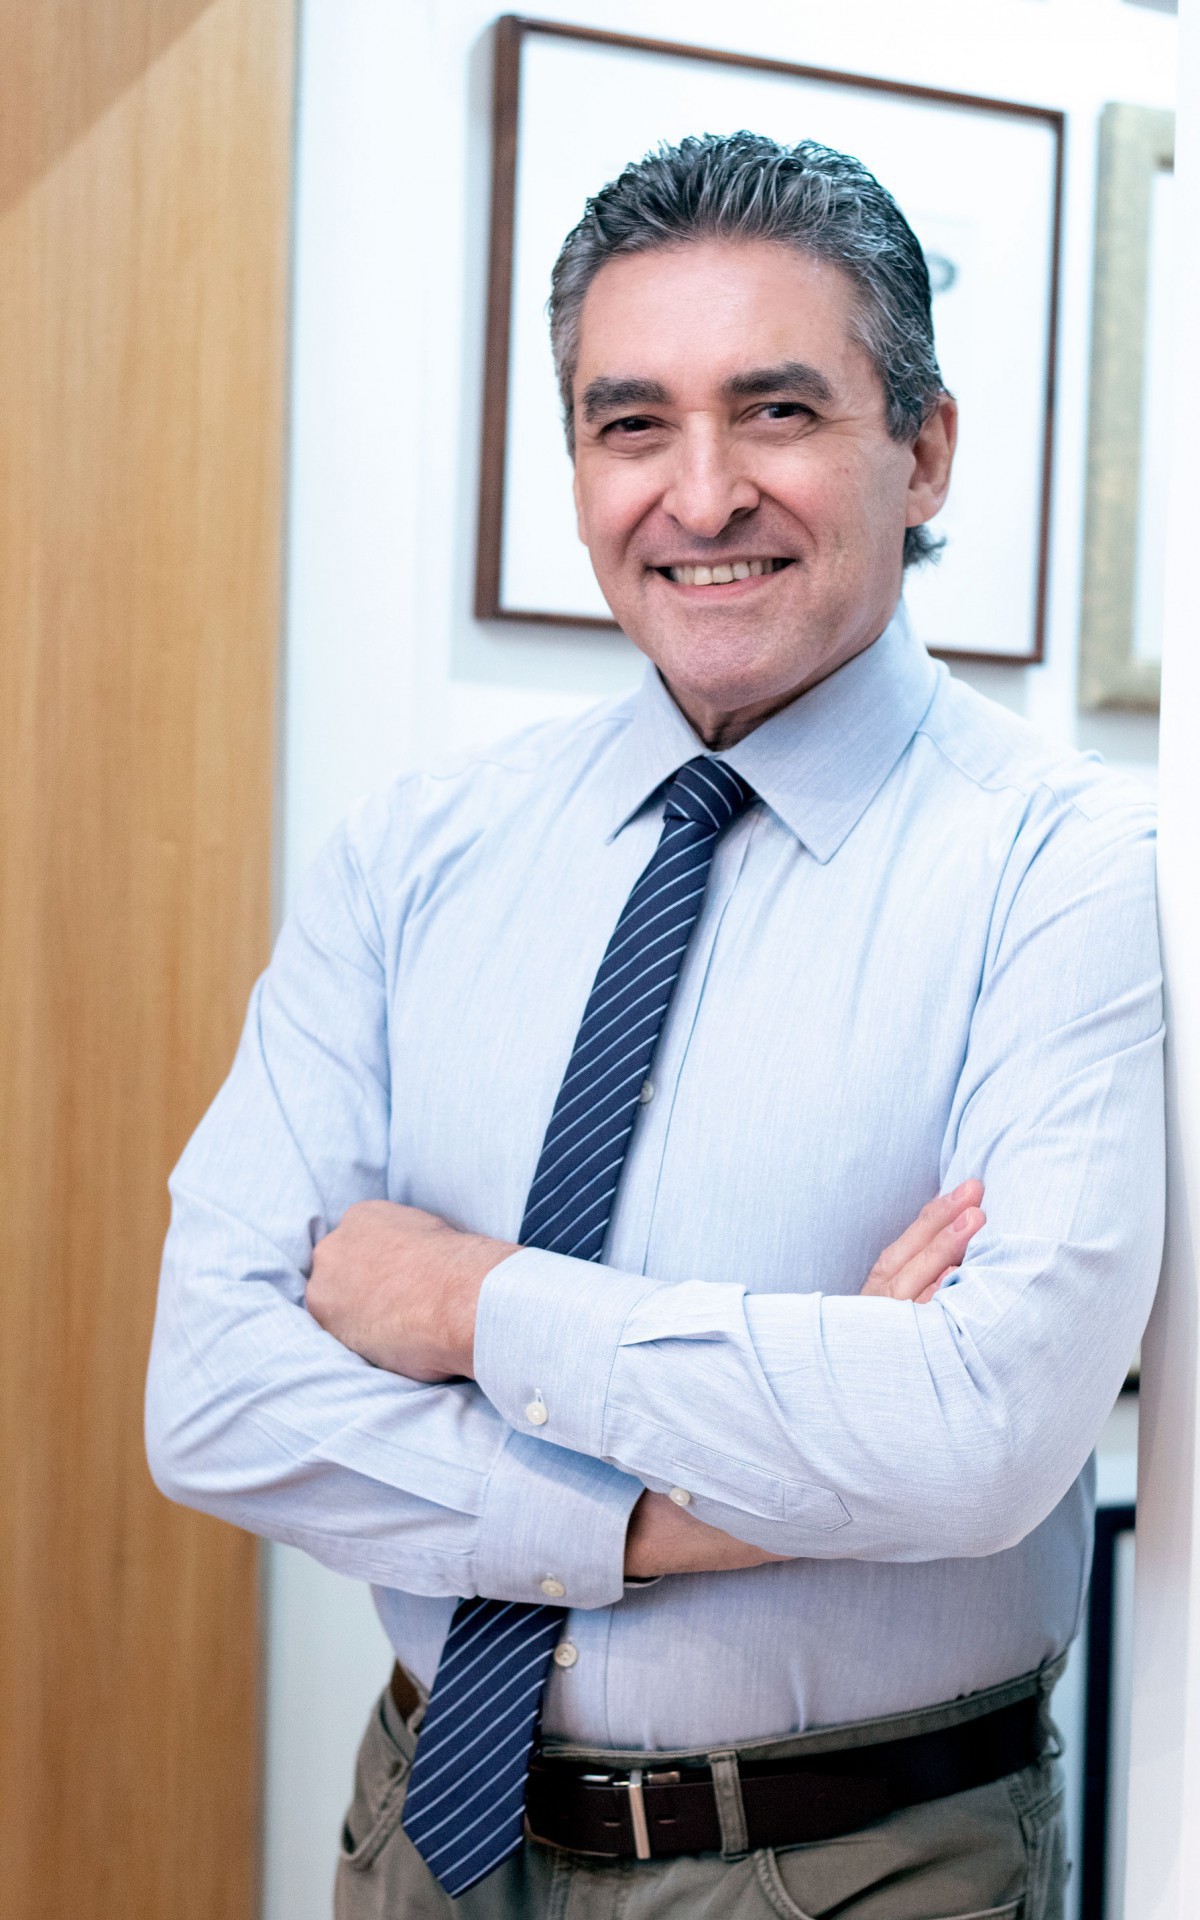 Alberto Lott Caldeira  é cirurgião plástico, Mestre, Doutor é professor regente do Curso de especialização em Cirurgia Plástica do Instituto Avançado de Cirurgia Plástica  (IACP) - Divulgação